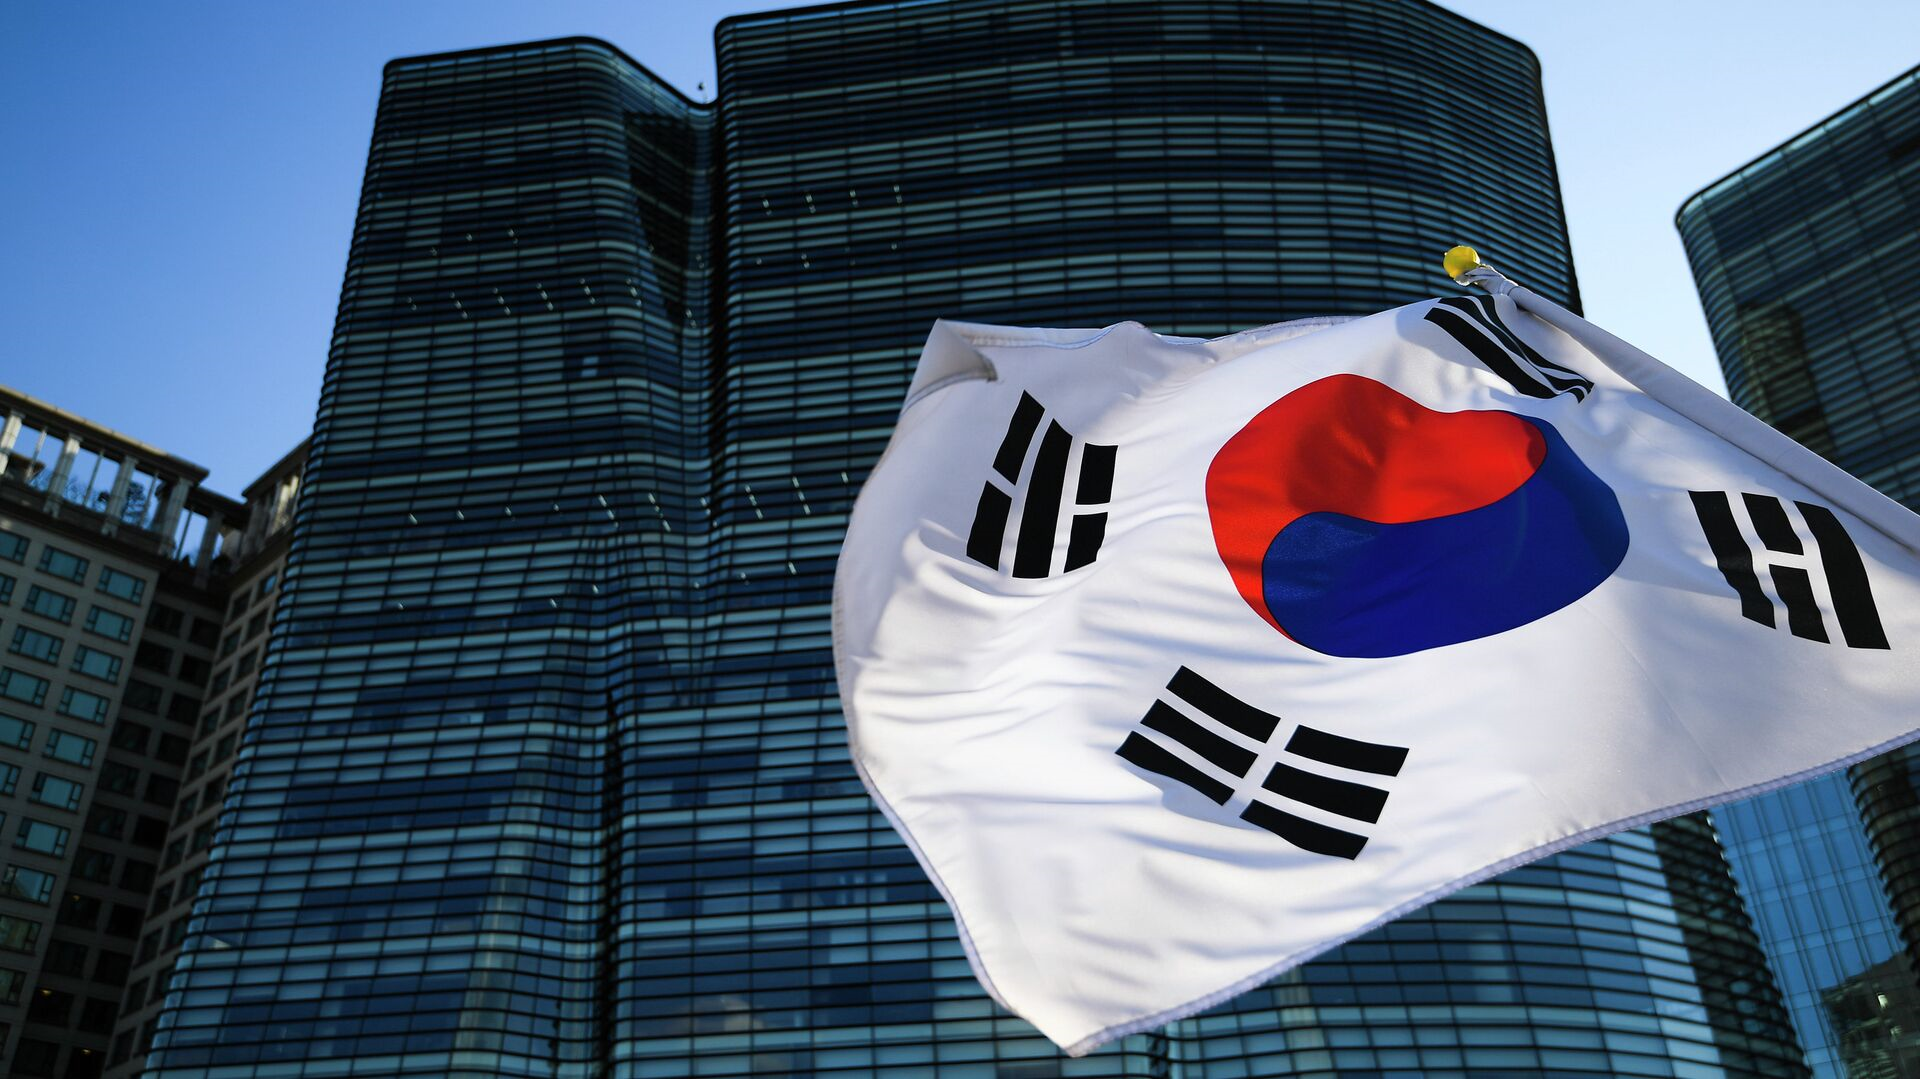 Важное объявление для соискателей, находящихся в базе электронной системы и рассматривающих возможность трудоустройства в Республику Корея!